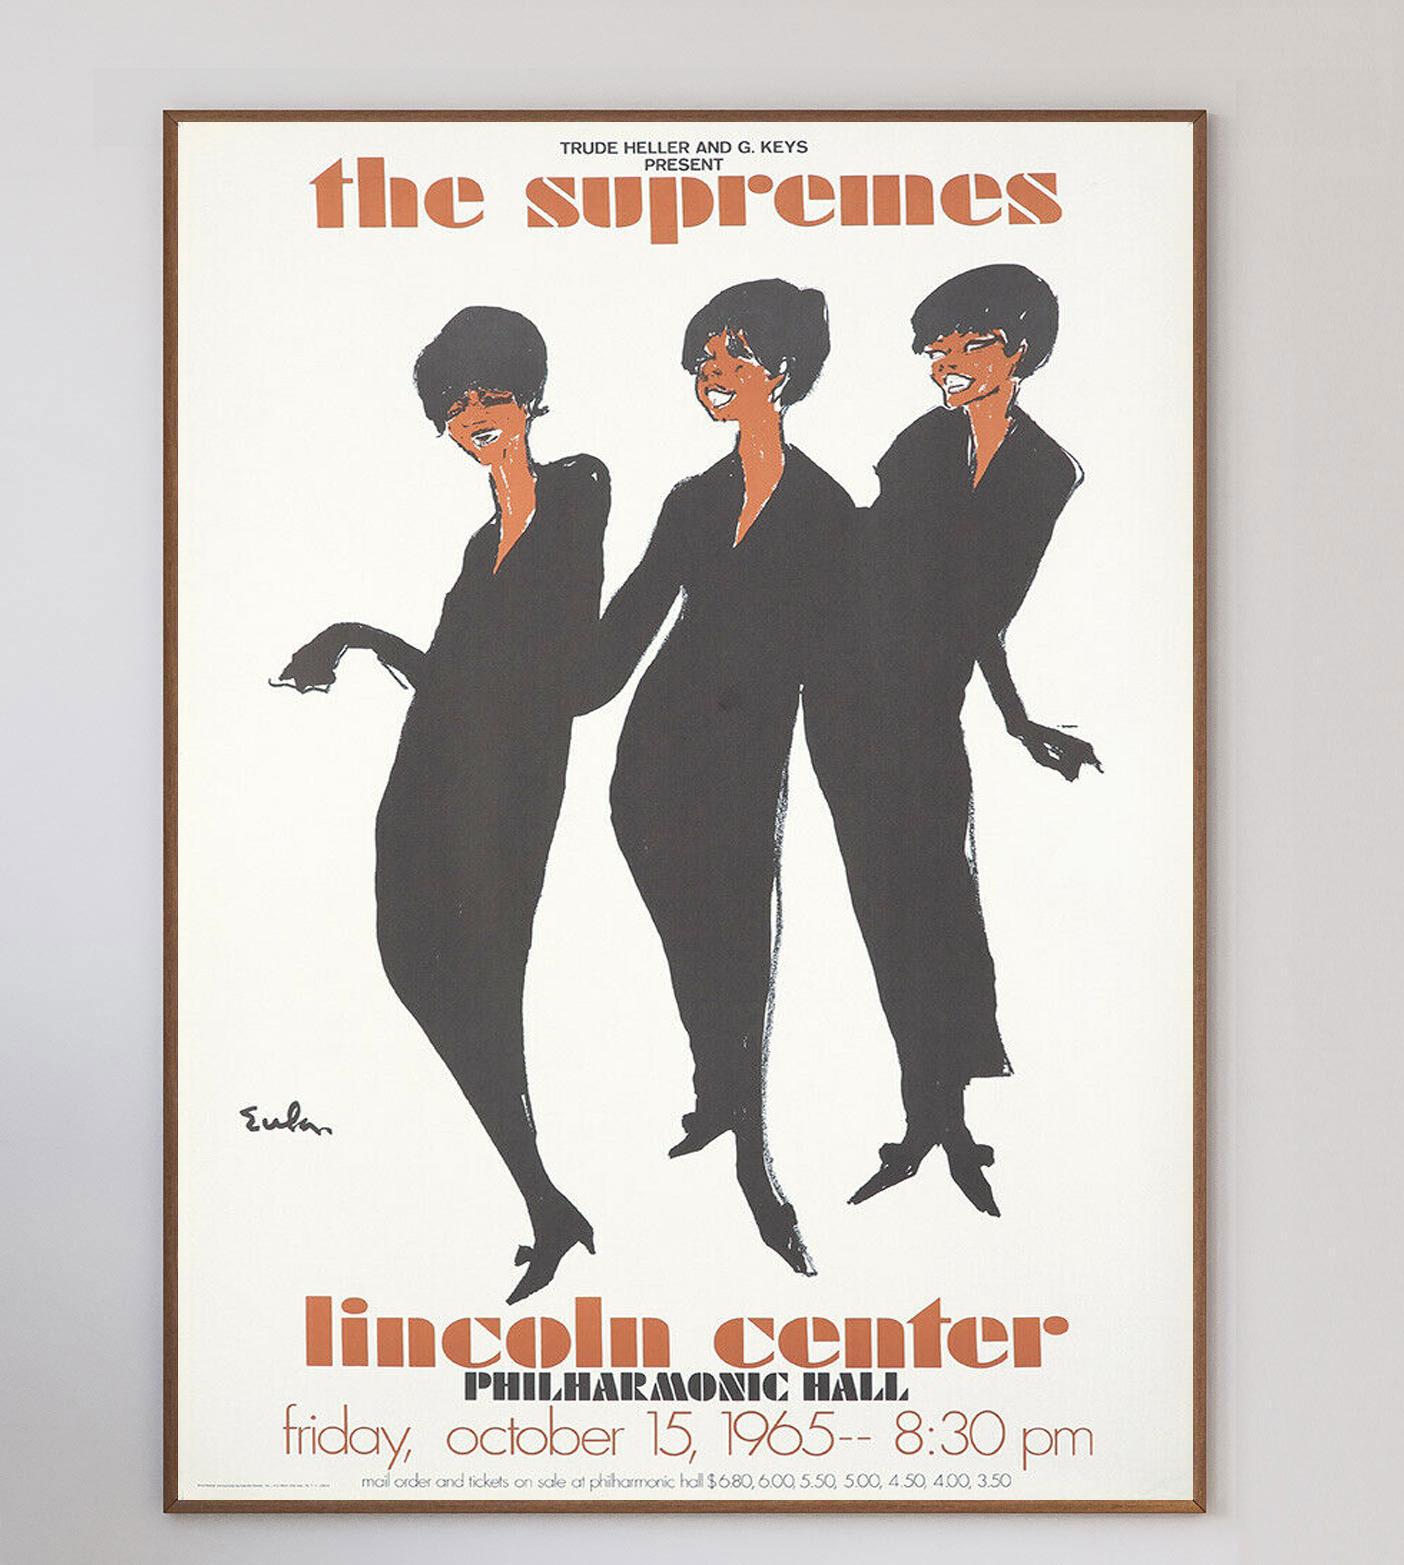 Le célèbre illustrateur de mode Joe Eula a été chargé de concevoir cette affiche pour le spectacle à guichets fermés des Supremes en 1965 au prestigieux Philharmonic Hall du Lincoln Center de New York.

Le concert a eu lieu au sommet de la gloire du